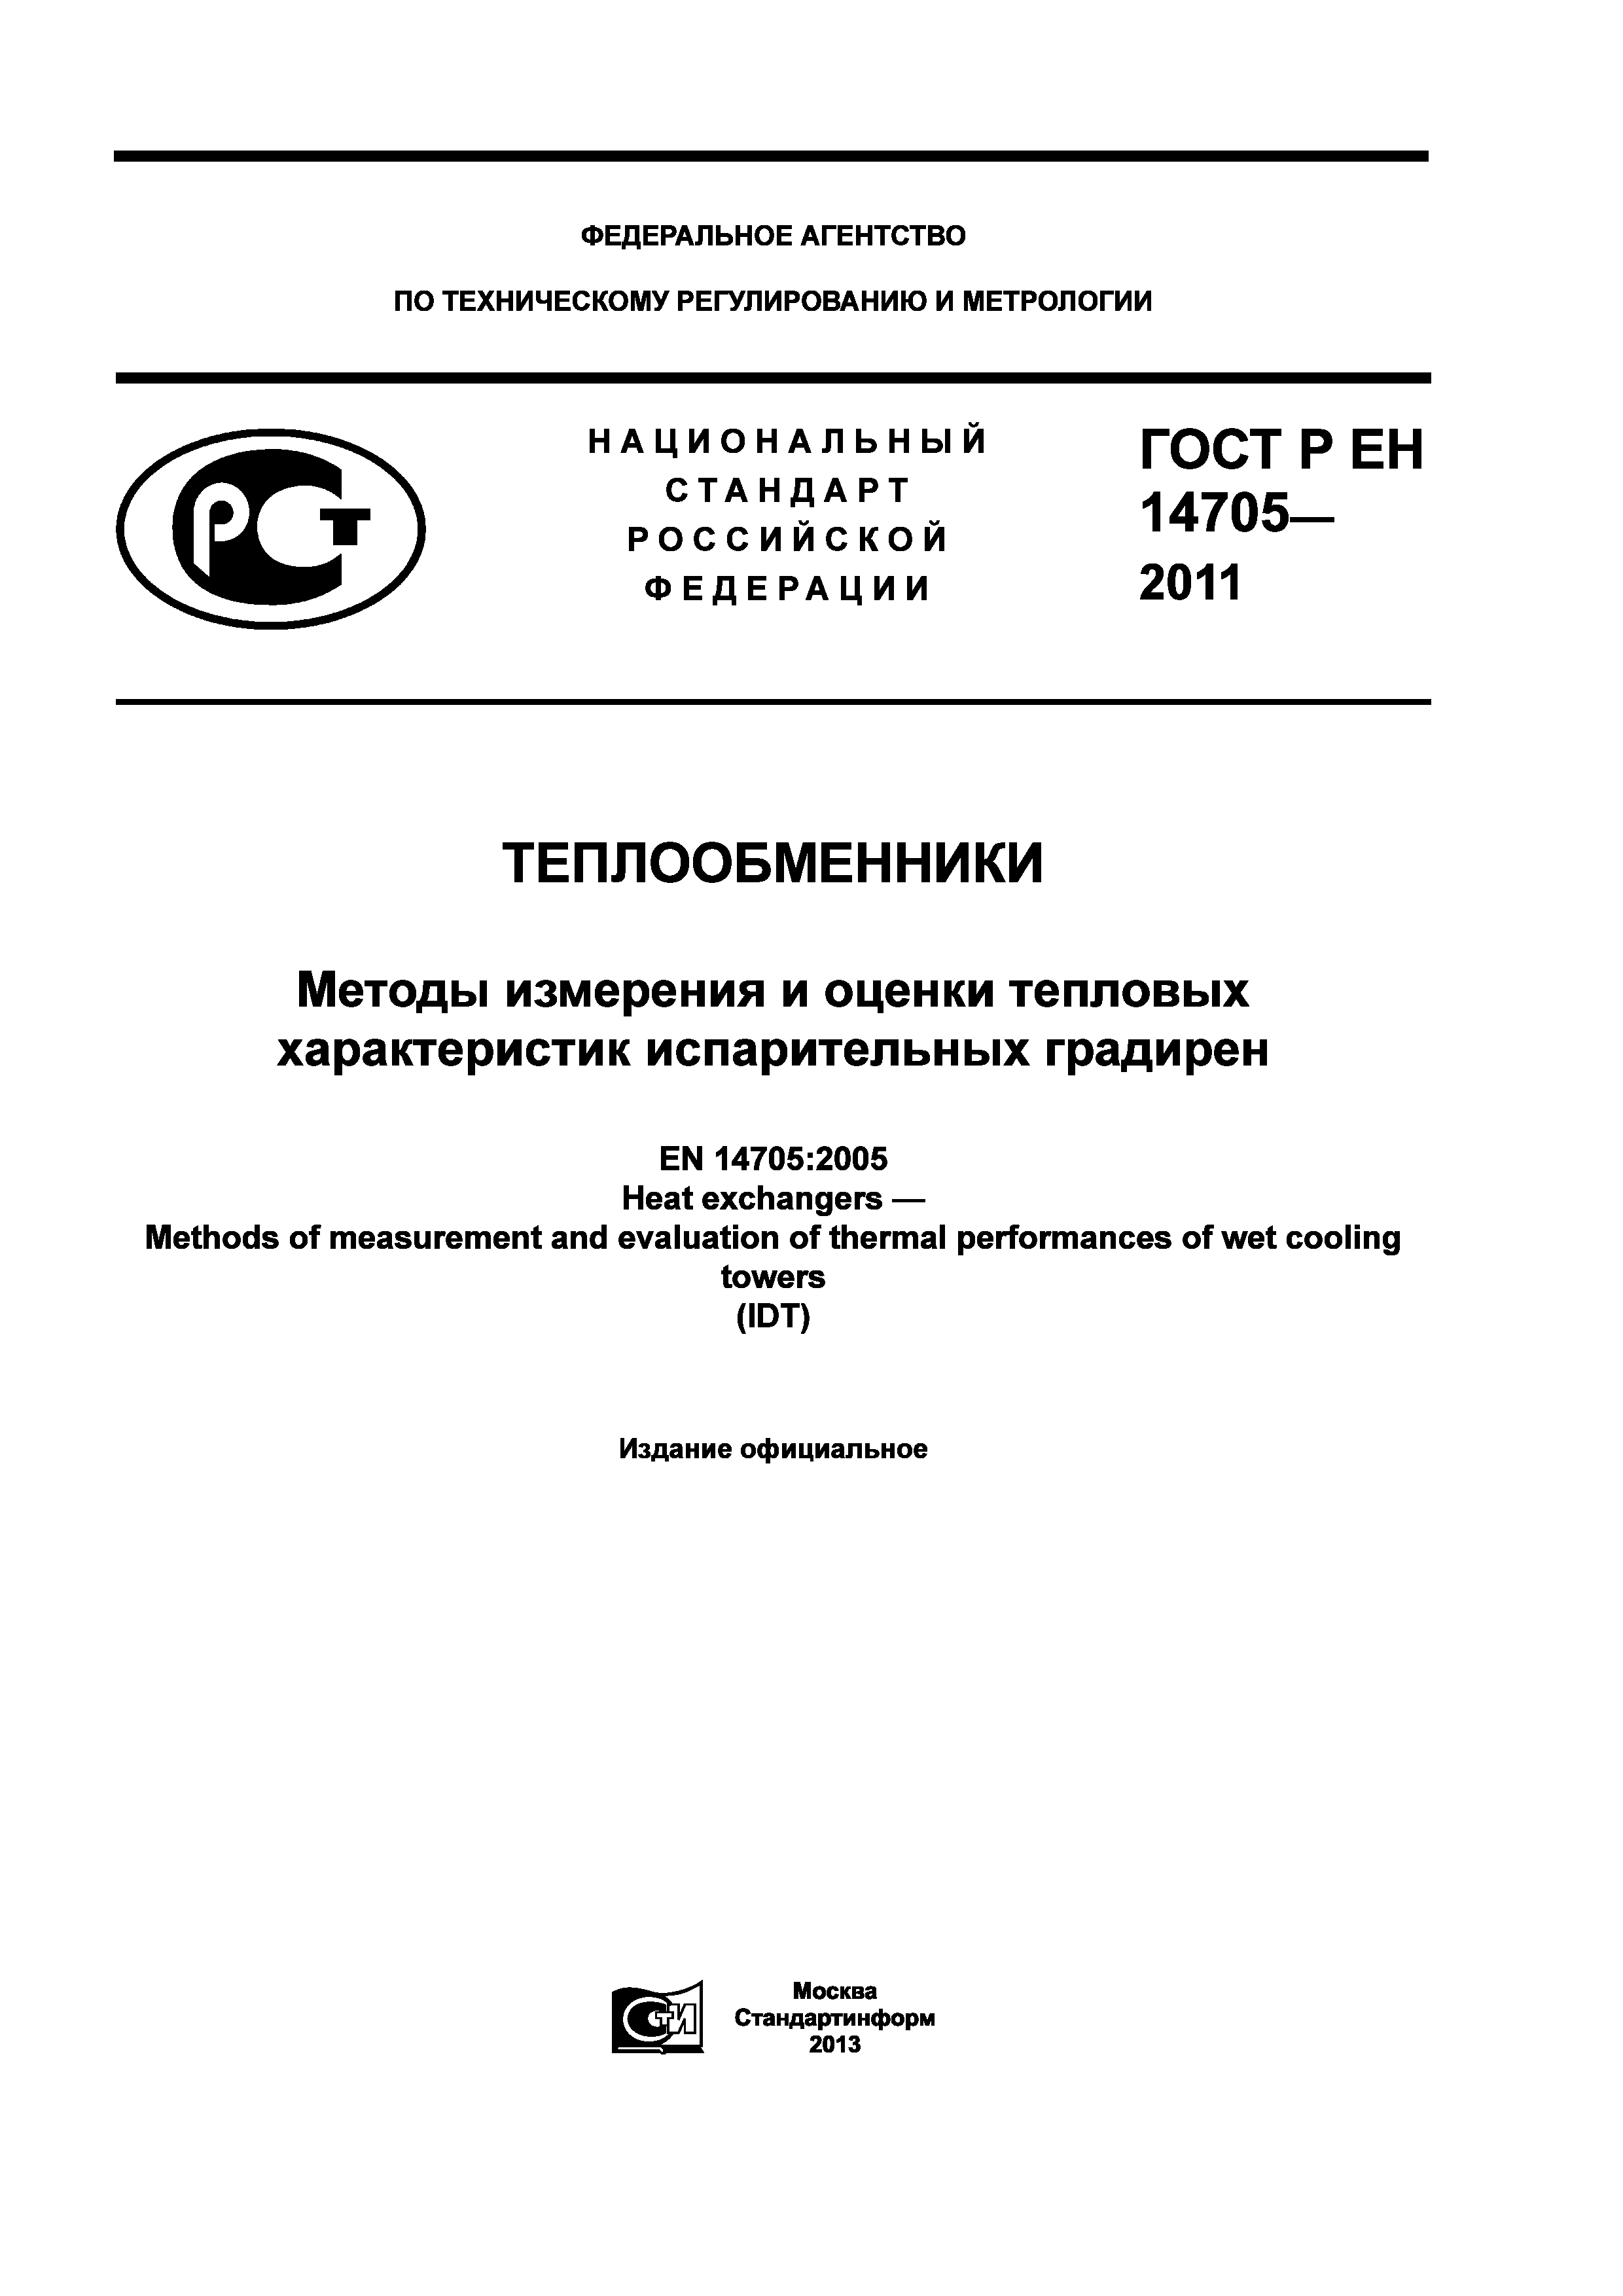 ГОСТ Р ЕН 14705-2011